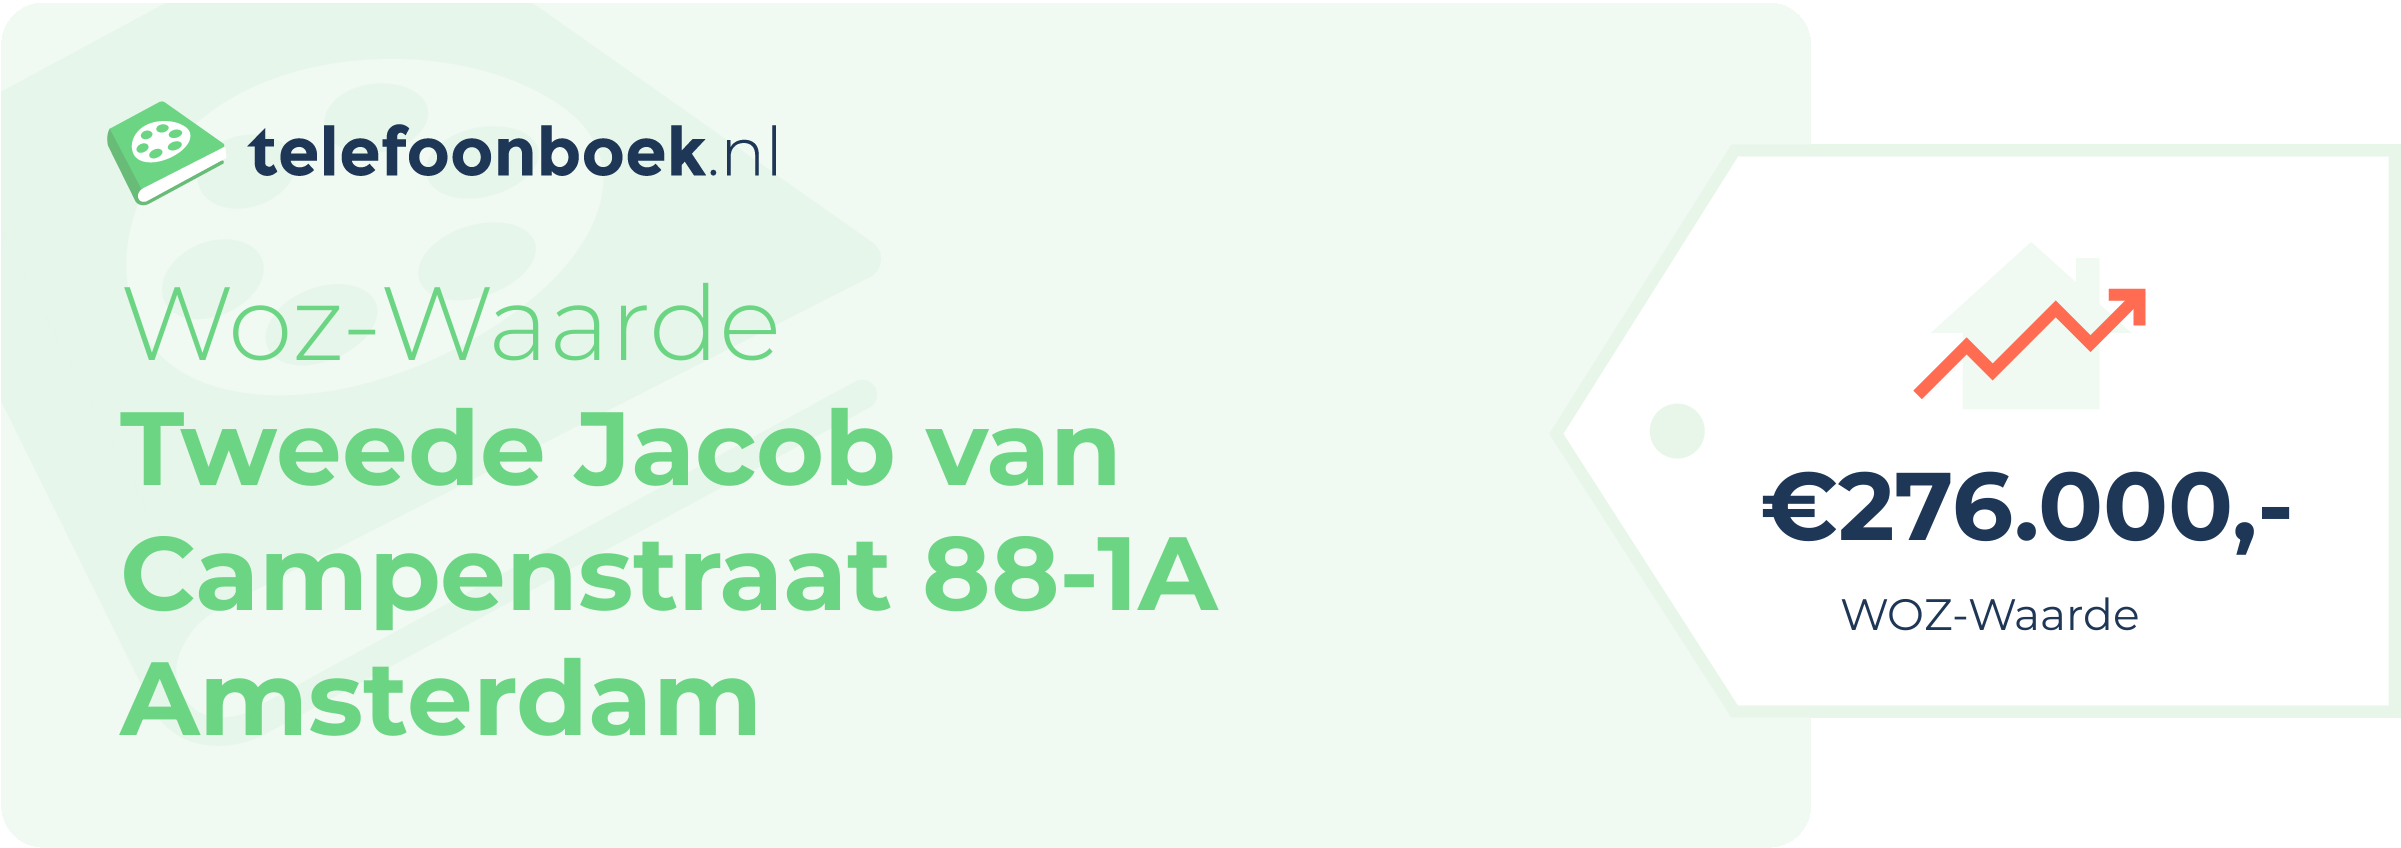 WOZ-waarde Tweede Jacob Van Campenstraat 88-1A Amsterdam